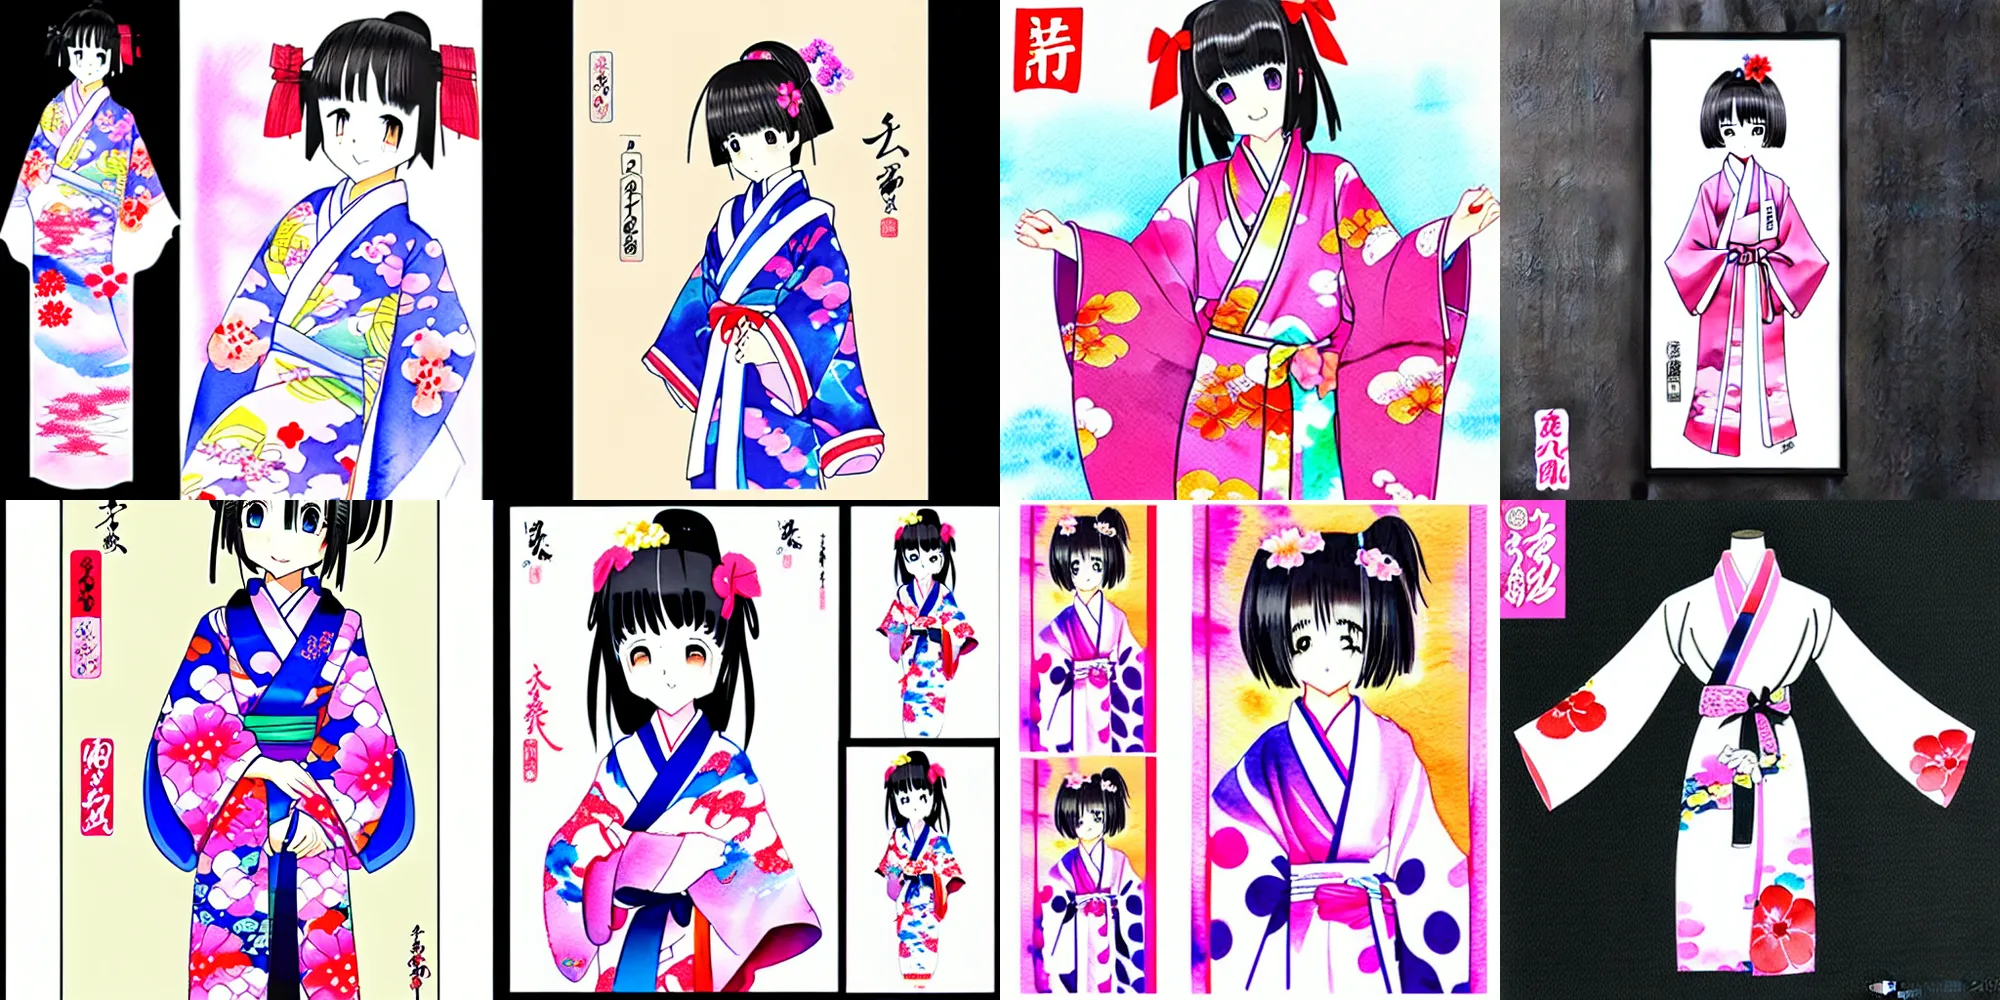 Prompt: cute kimono anime young female, kawaii shikishi character shikishi watercolor shikishi goods shikishi artist shikishi